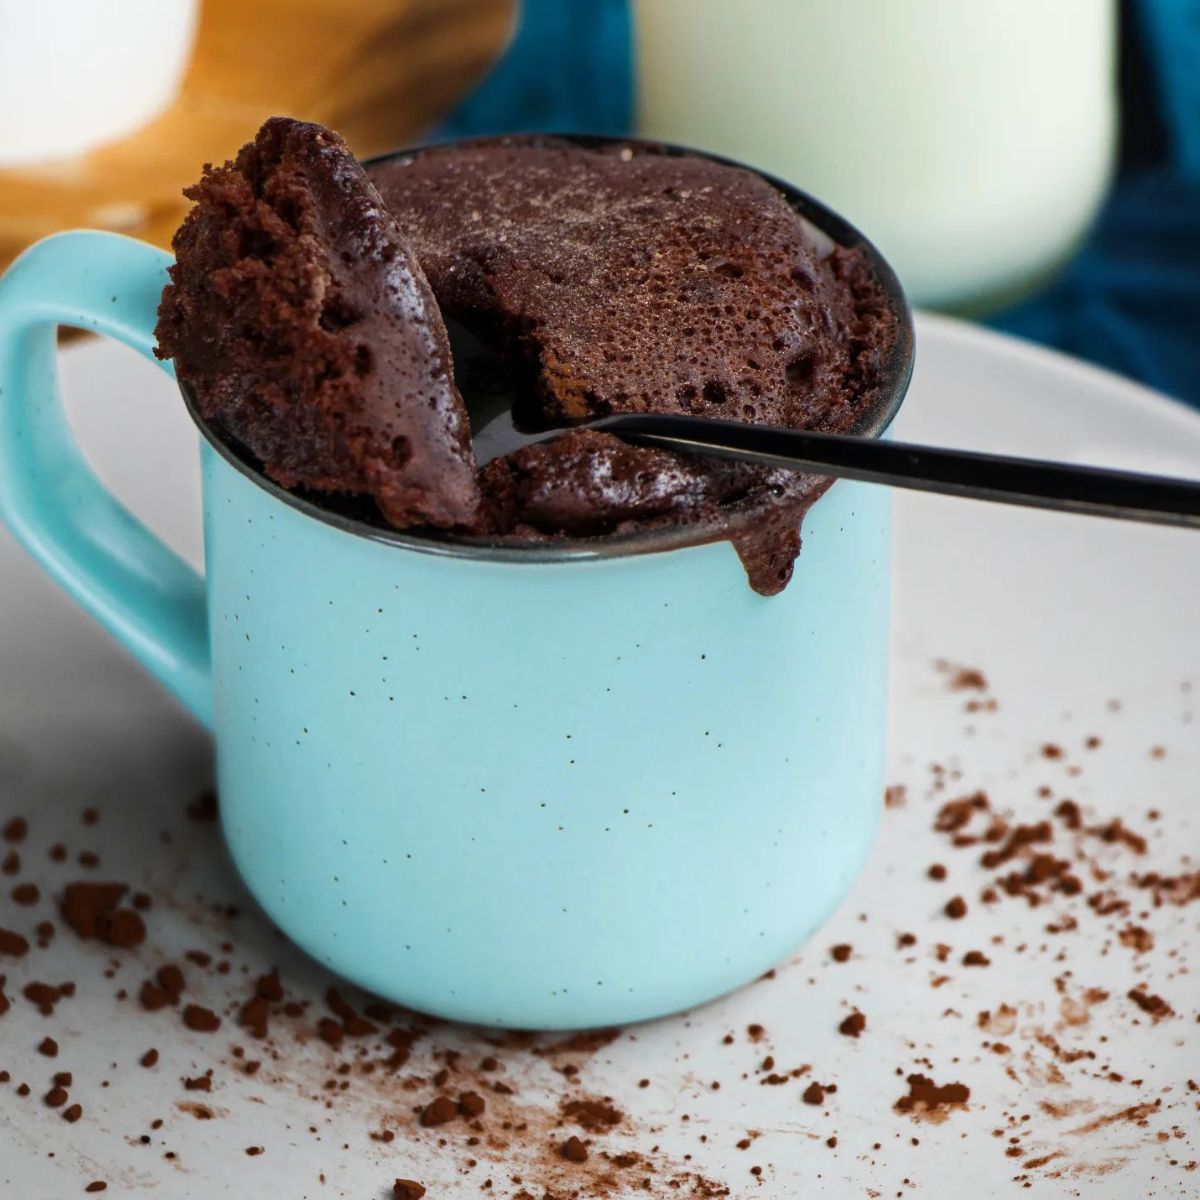 The Milk Pantry Chocolate Mug Cake